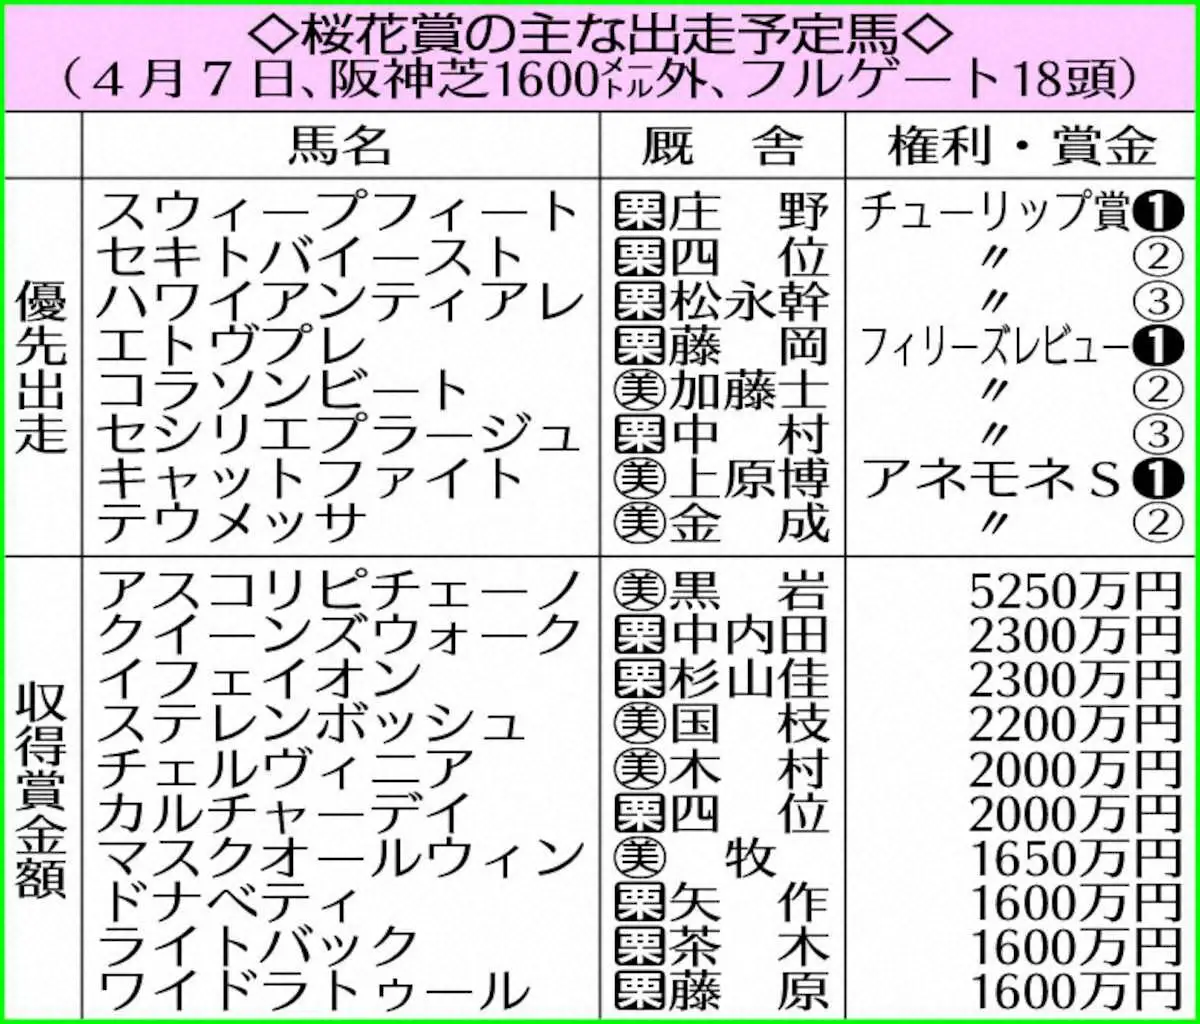 桜花賞を占う　TR組ではスウィープフィートにインパクトあり　阪神JF上位組との差が埋まるか